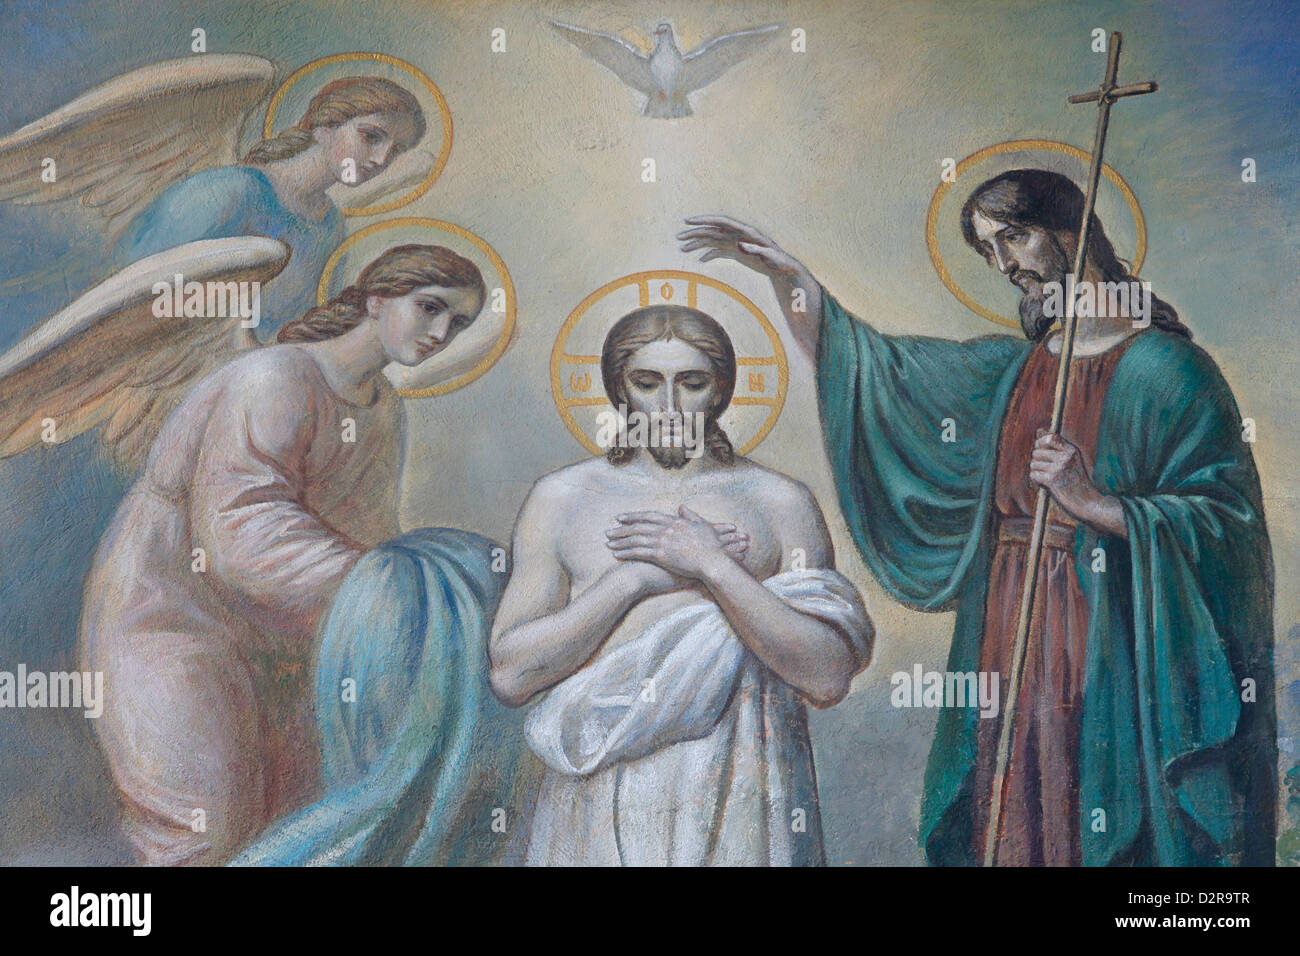 Le baptême de Jésus, l'Eglise orthodoxe russe, Saint-Pétersbourg, Russie, Europe Banque D'Images